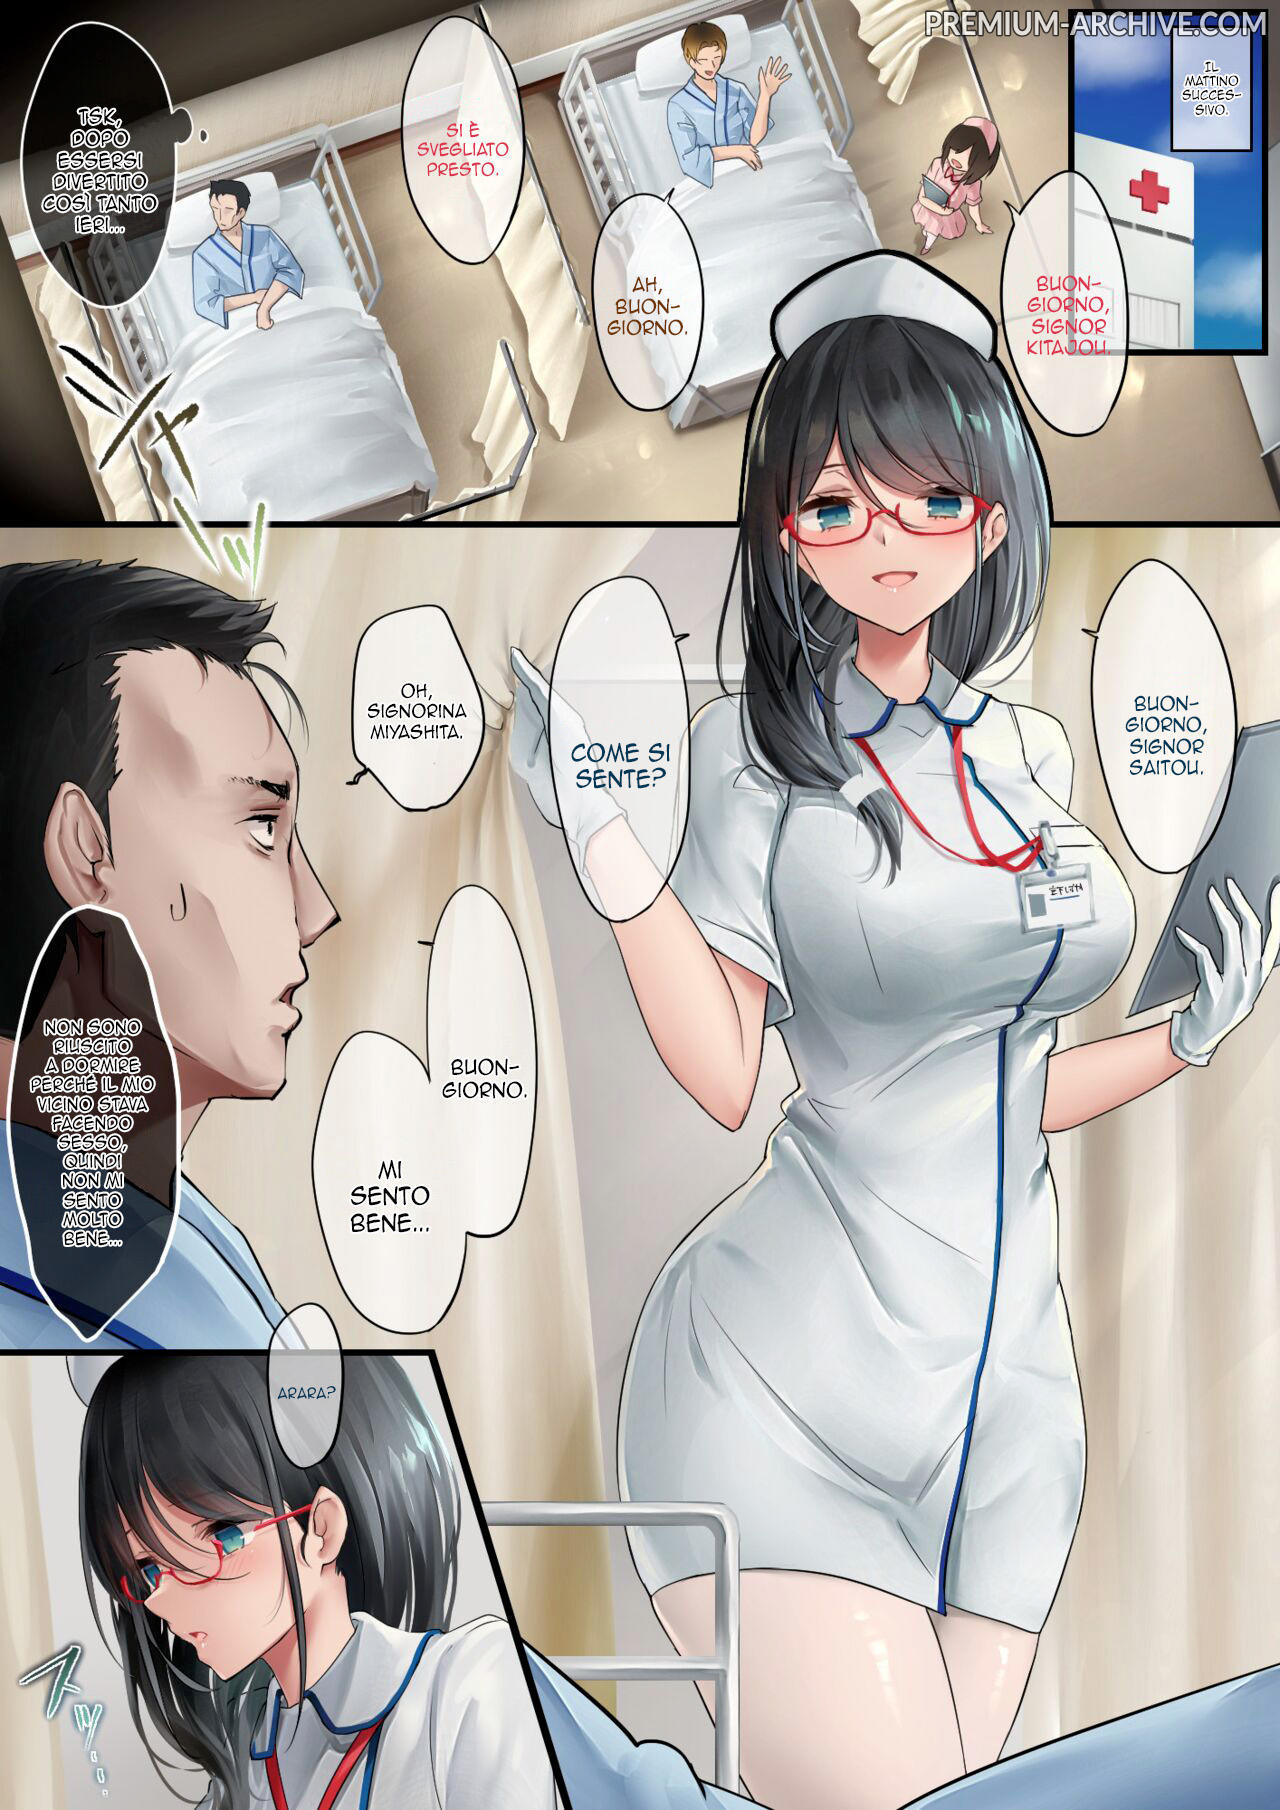 La splendente infermiera